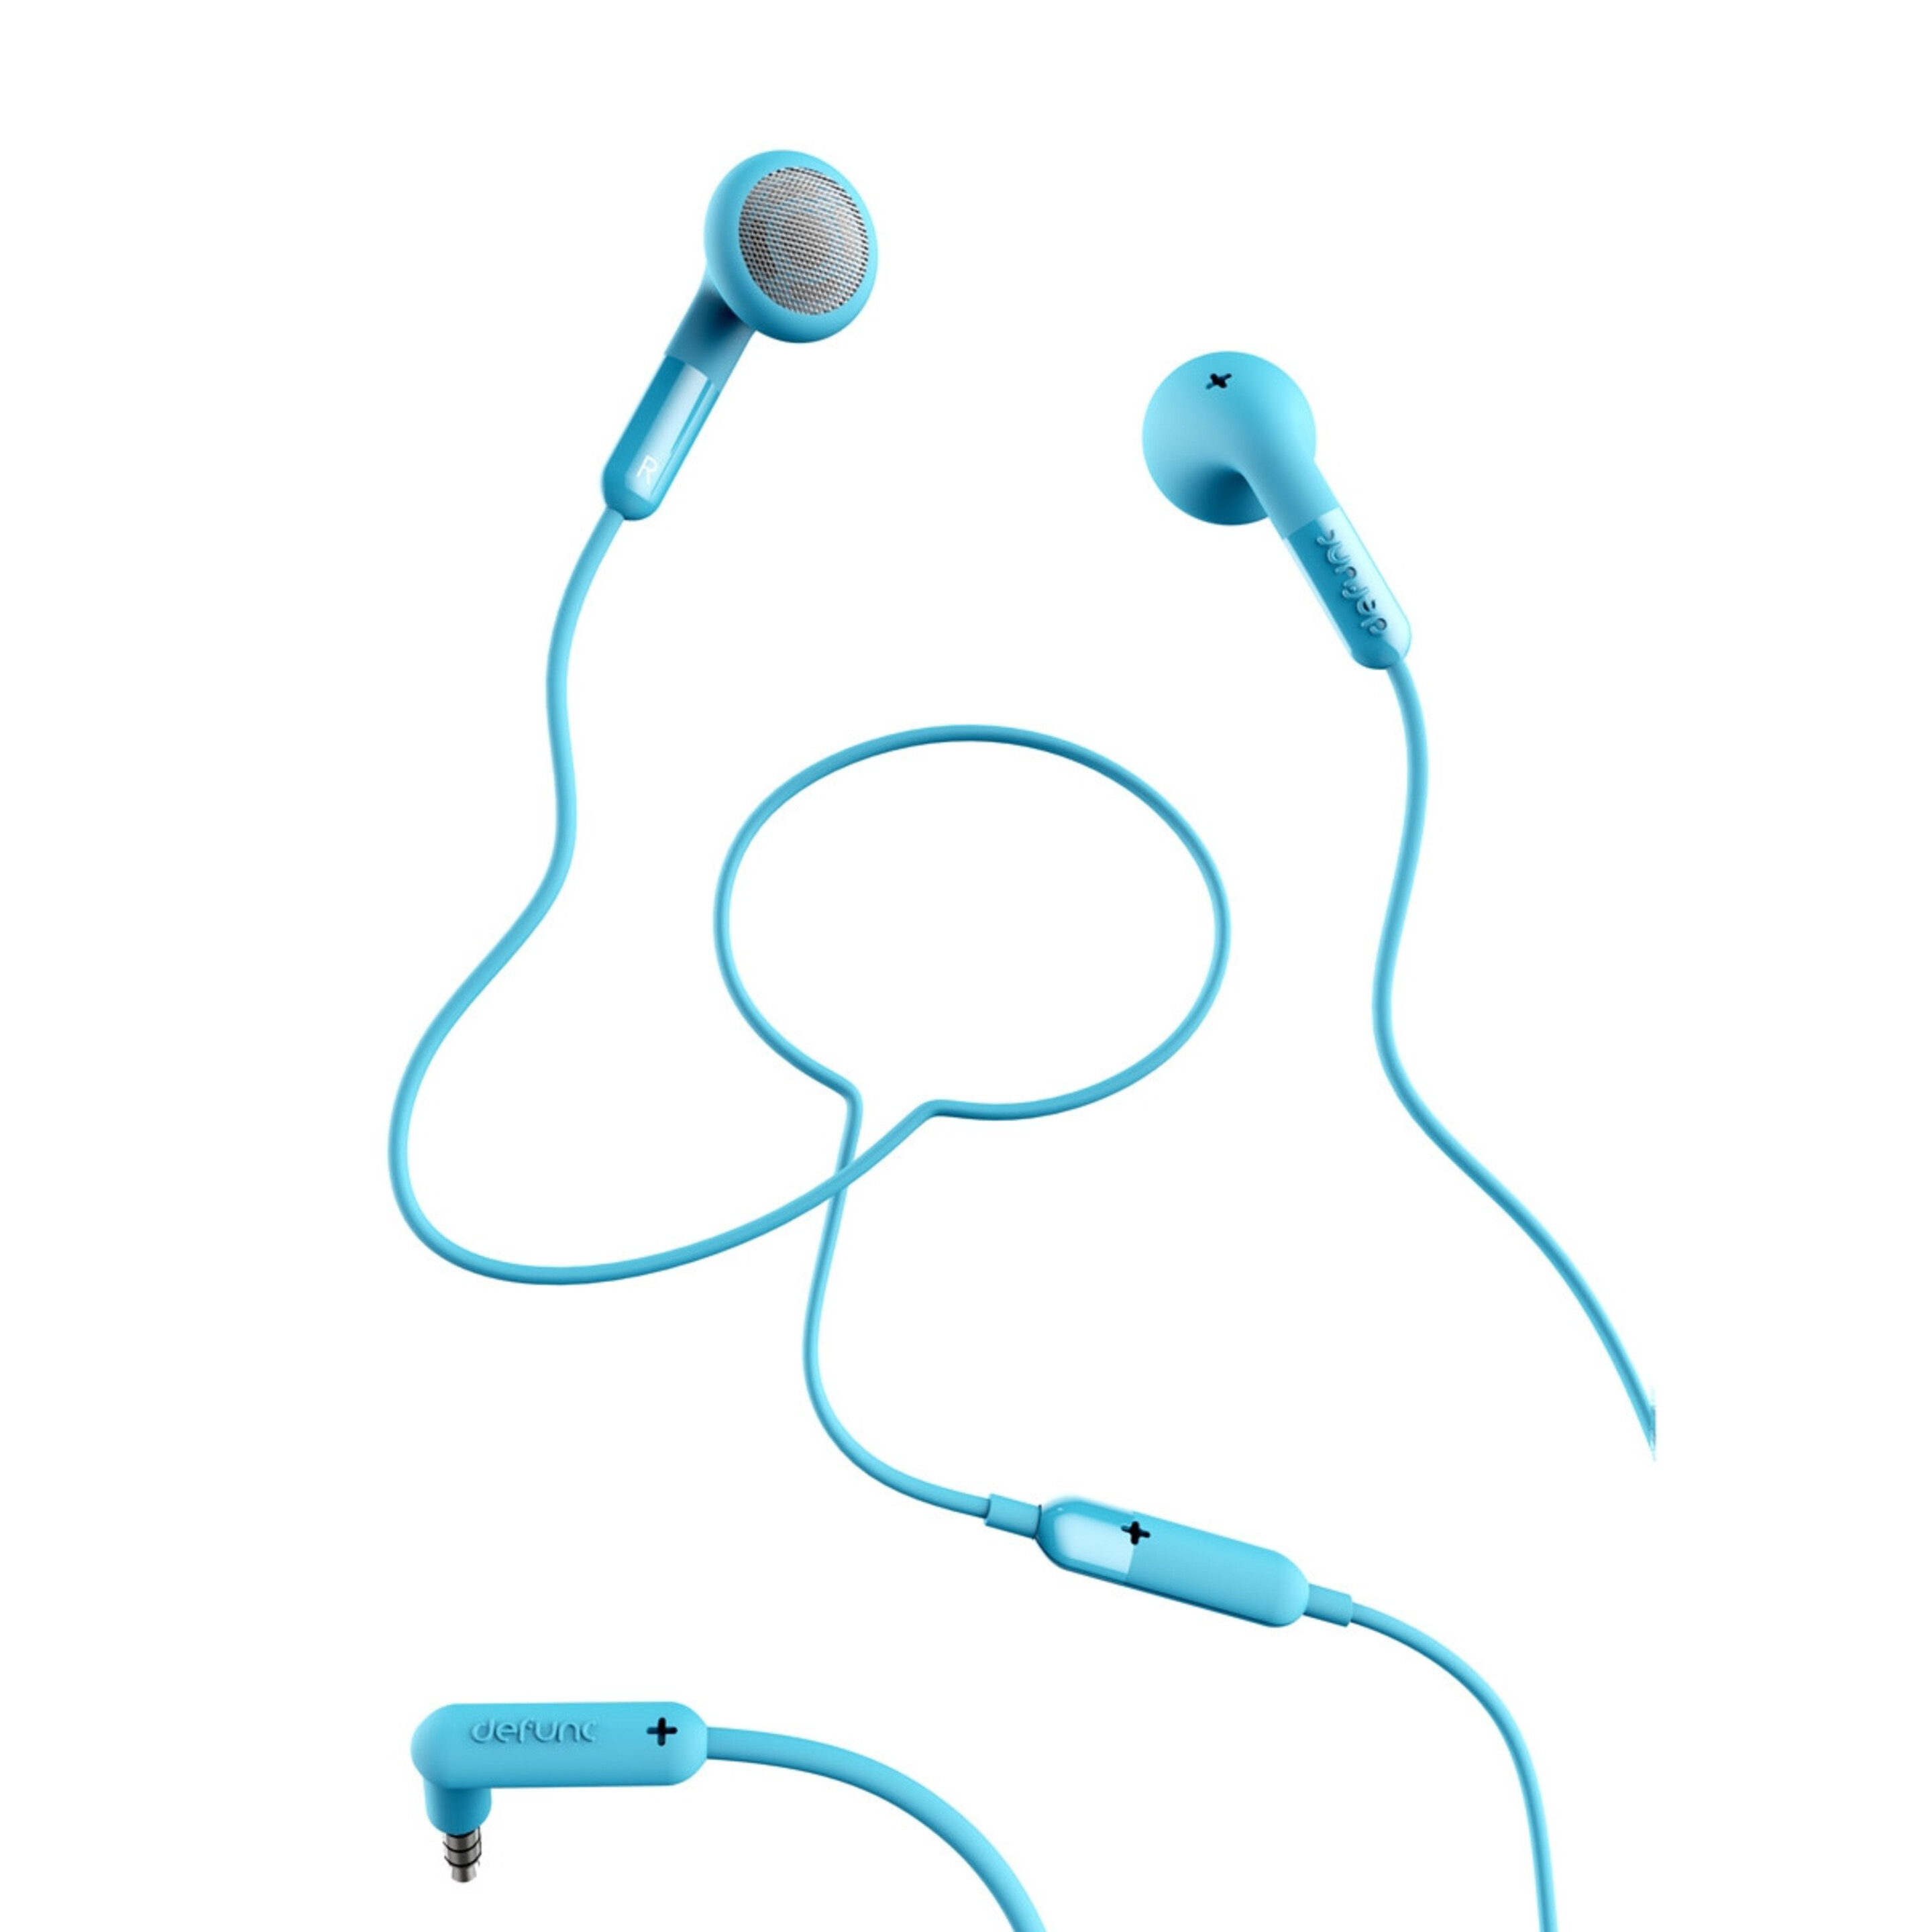 Auriculares Defunc + Talk Con Cable Jack 3,5 Mm - Azul - Aur35  MKP